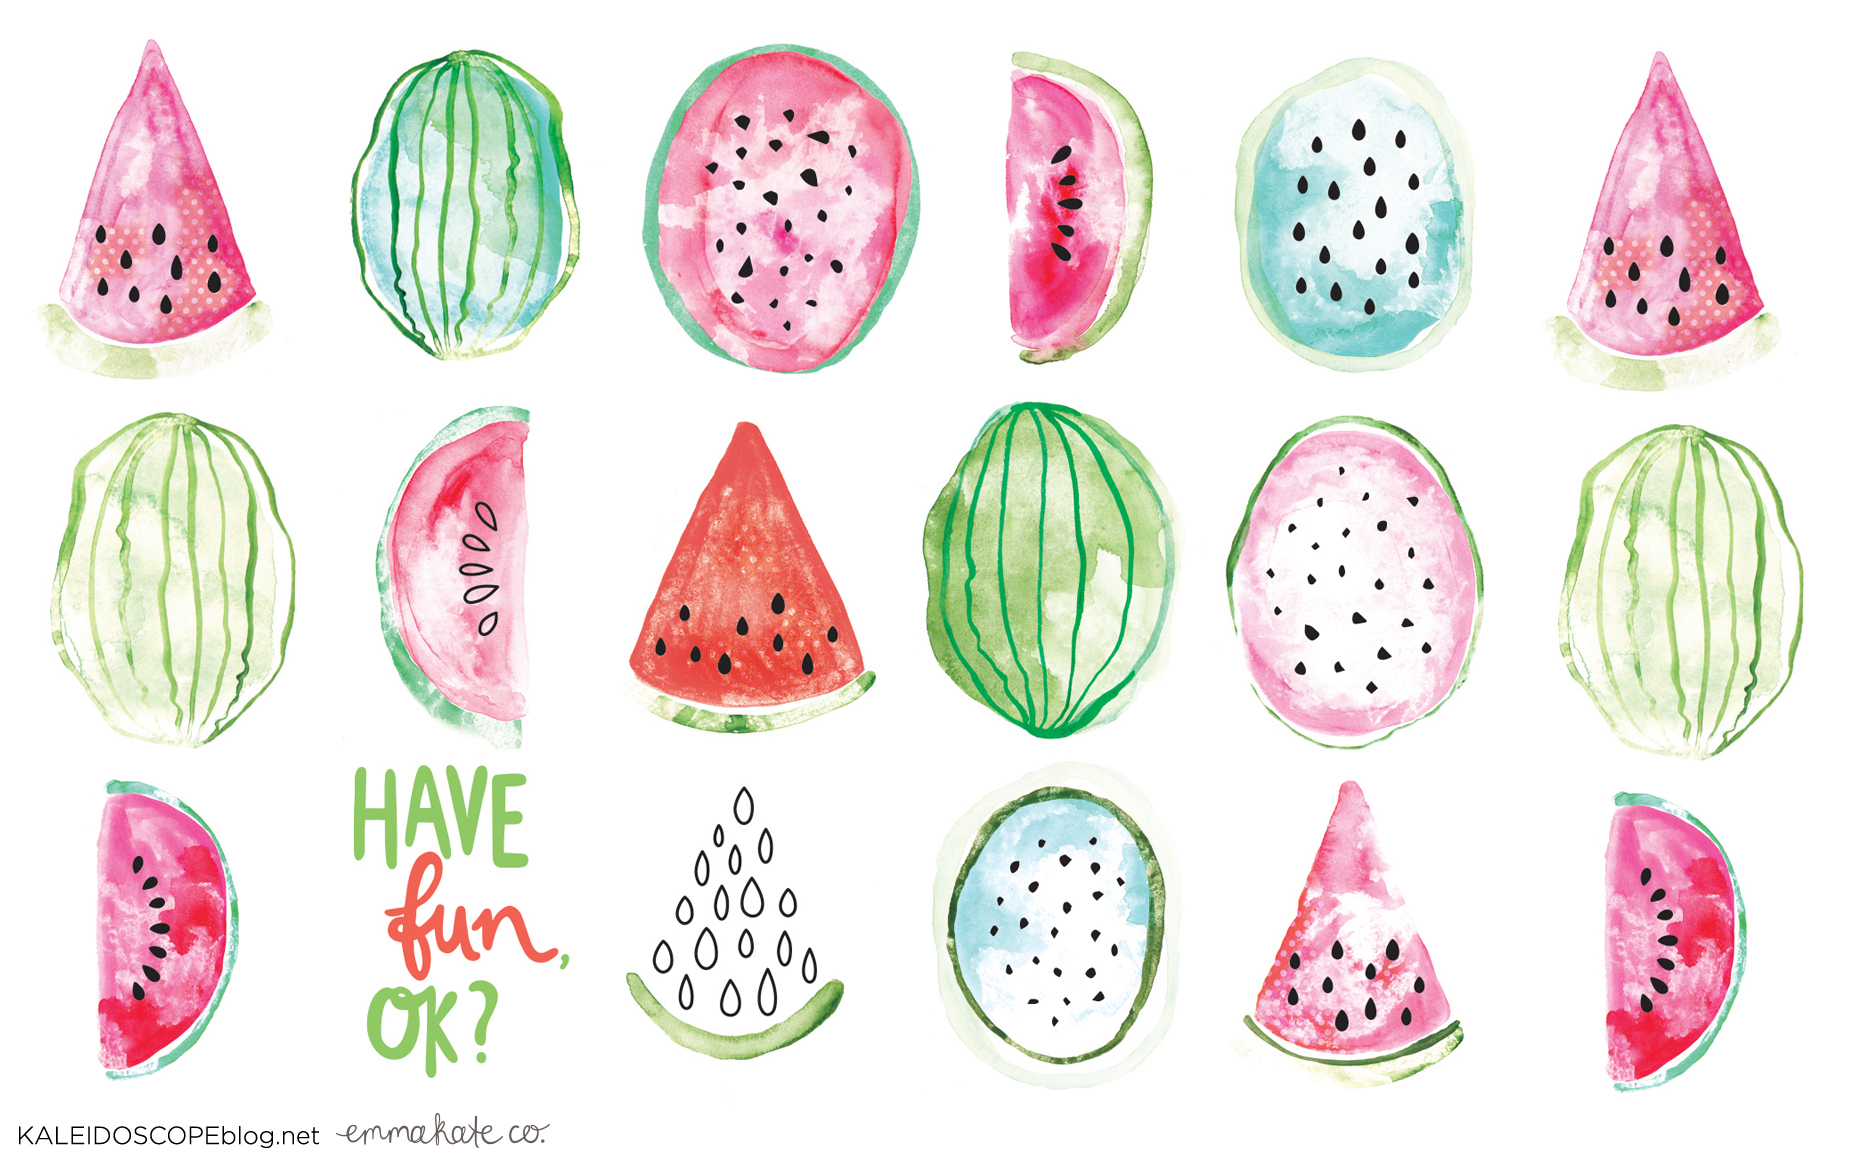 Kaleidoscope Desktop Wallpaper Melons by Emma Kate Co